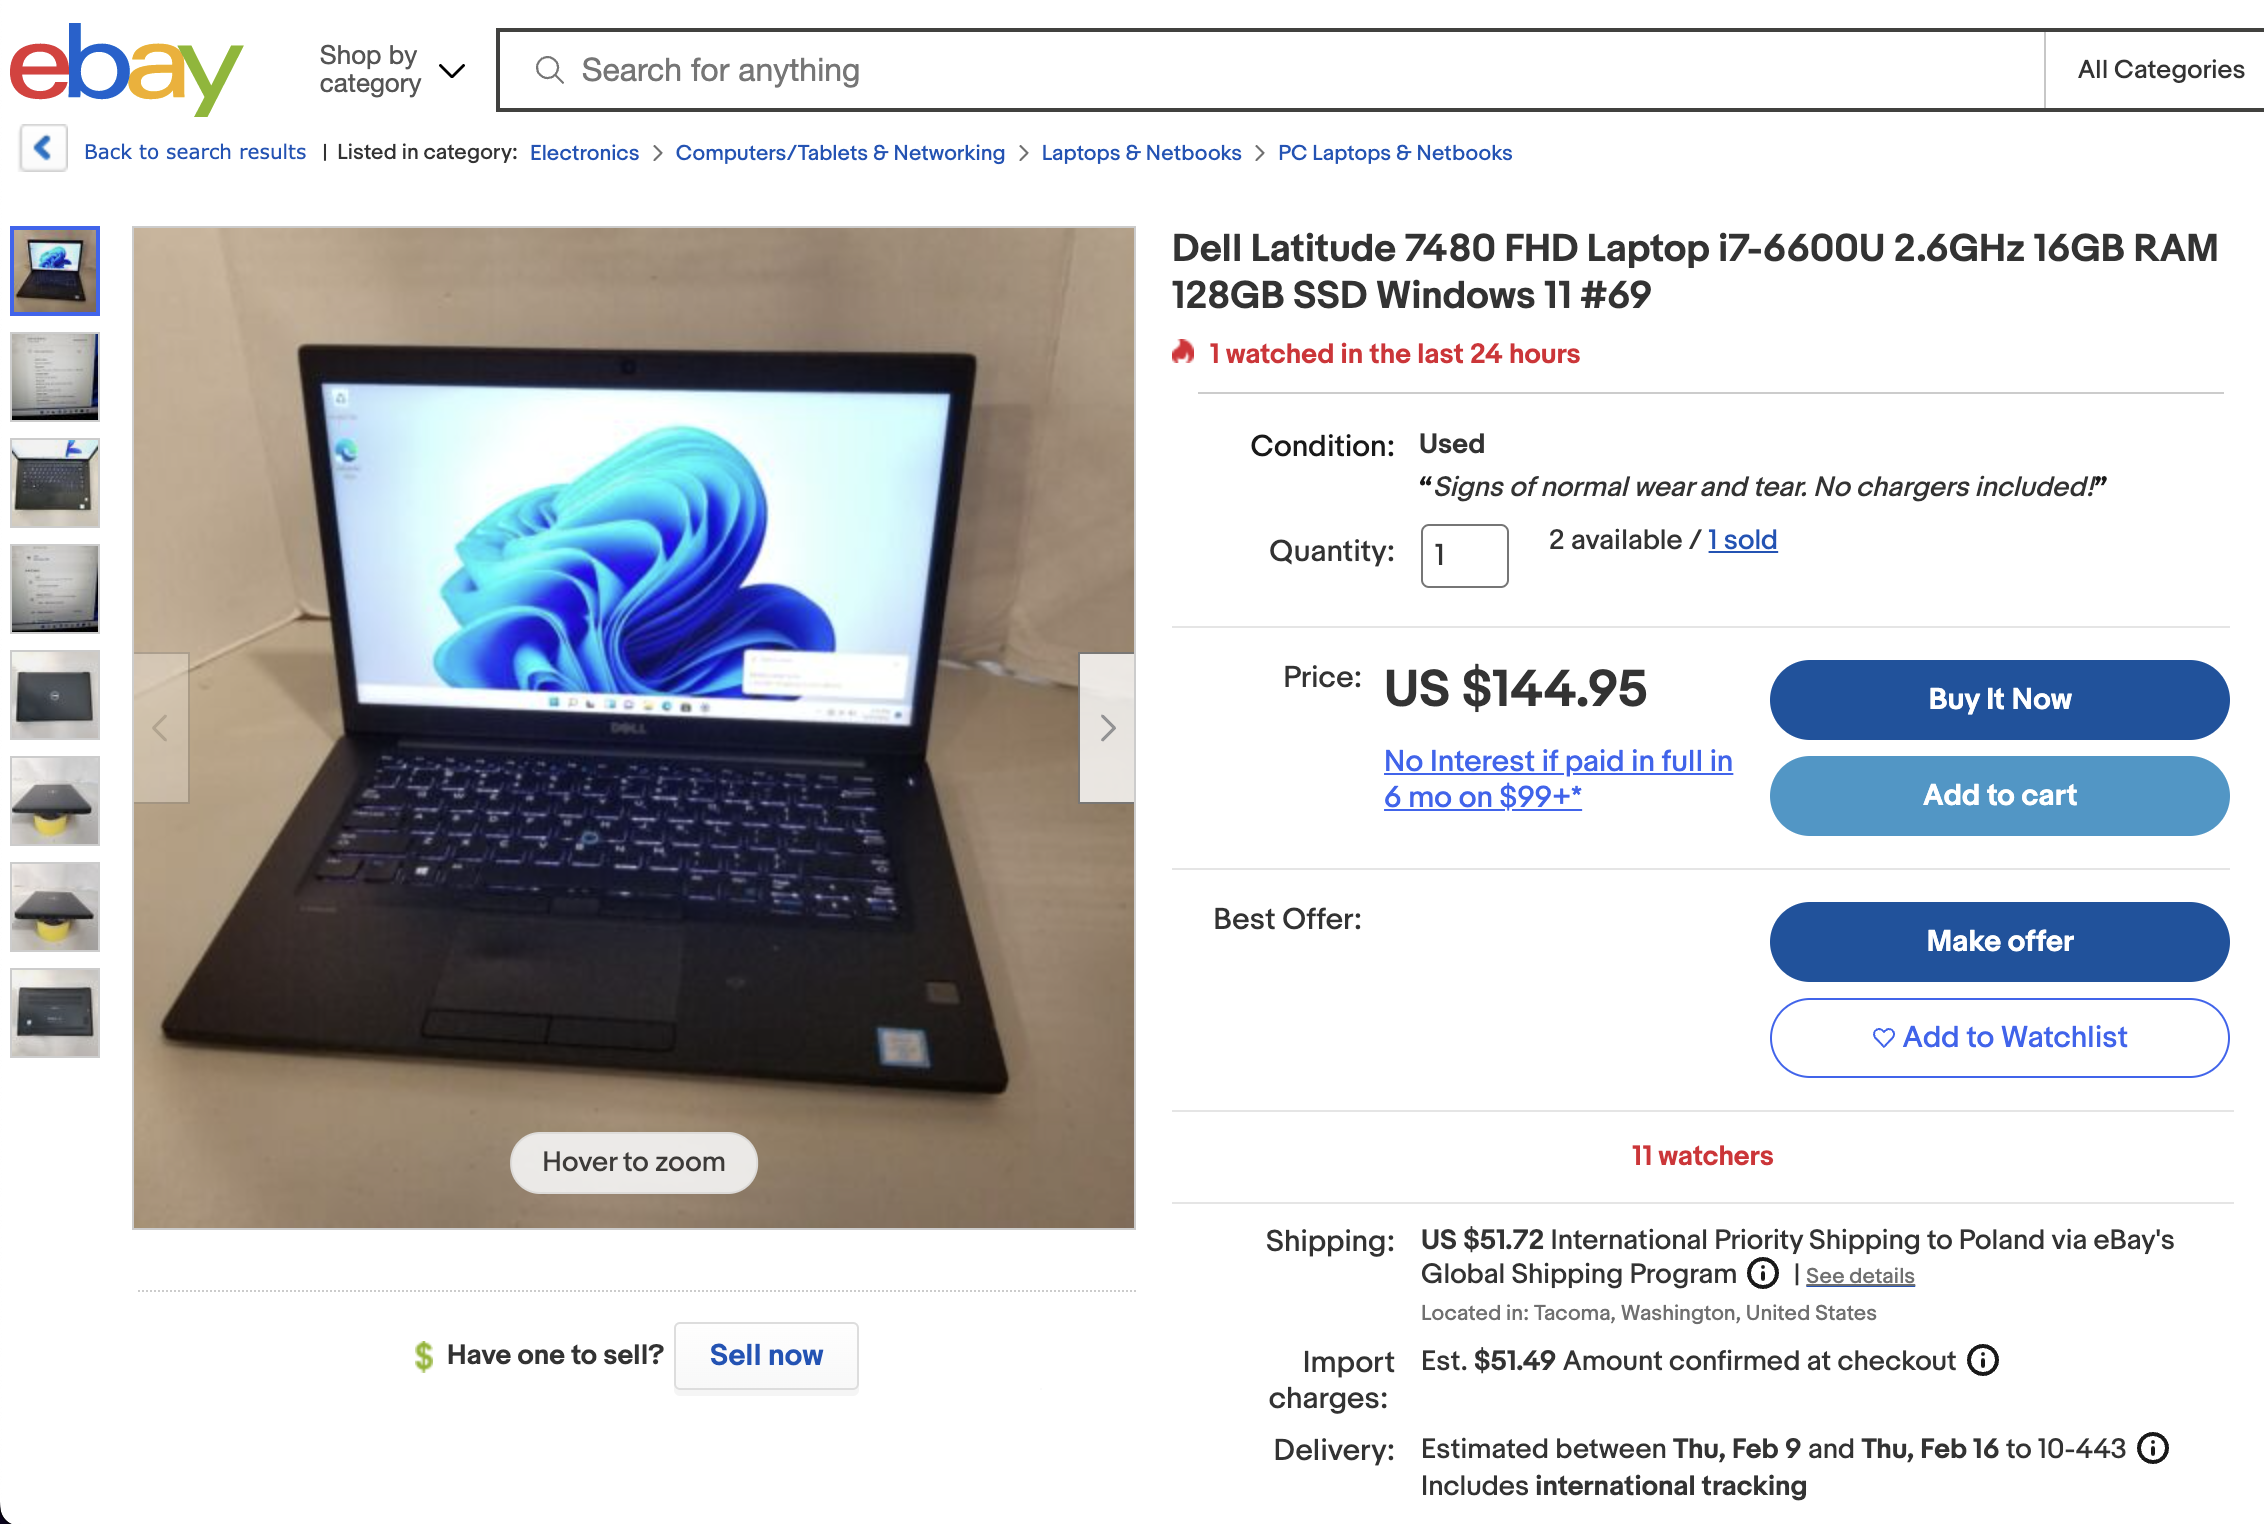 Ebay screenshot of a laptop